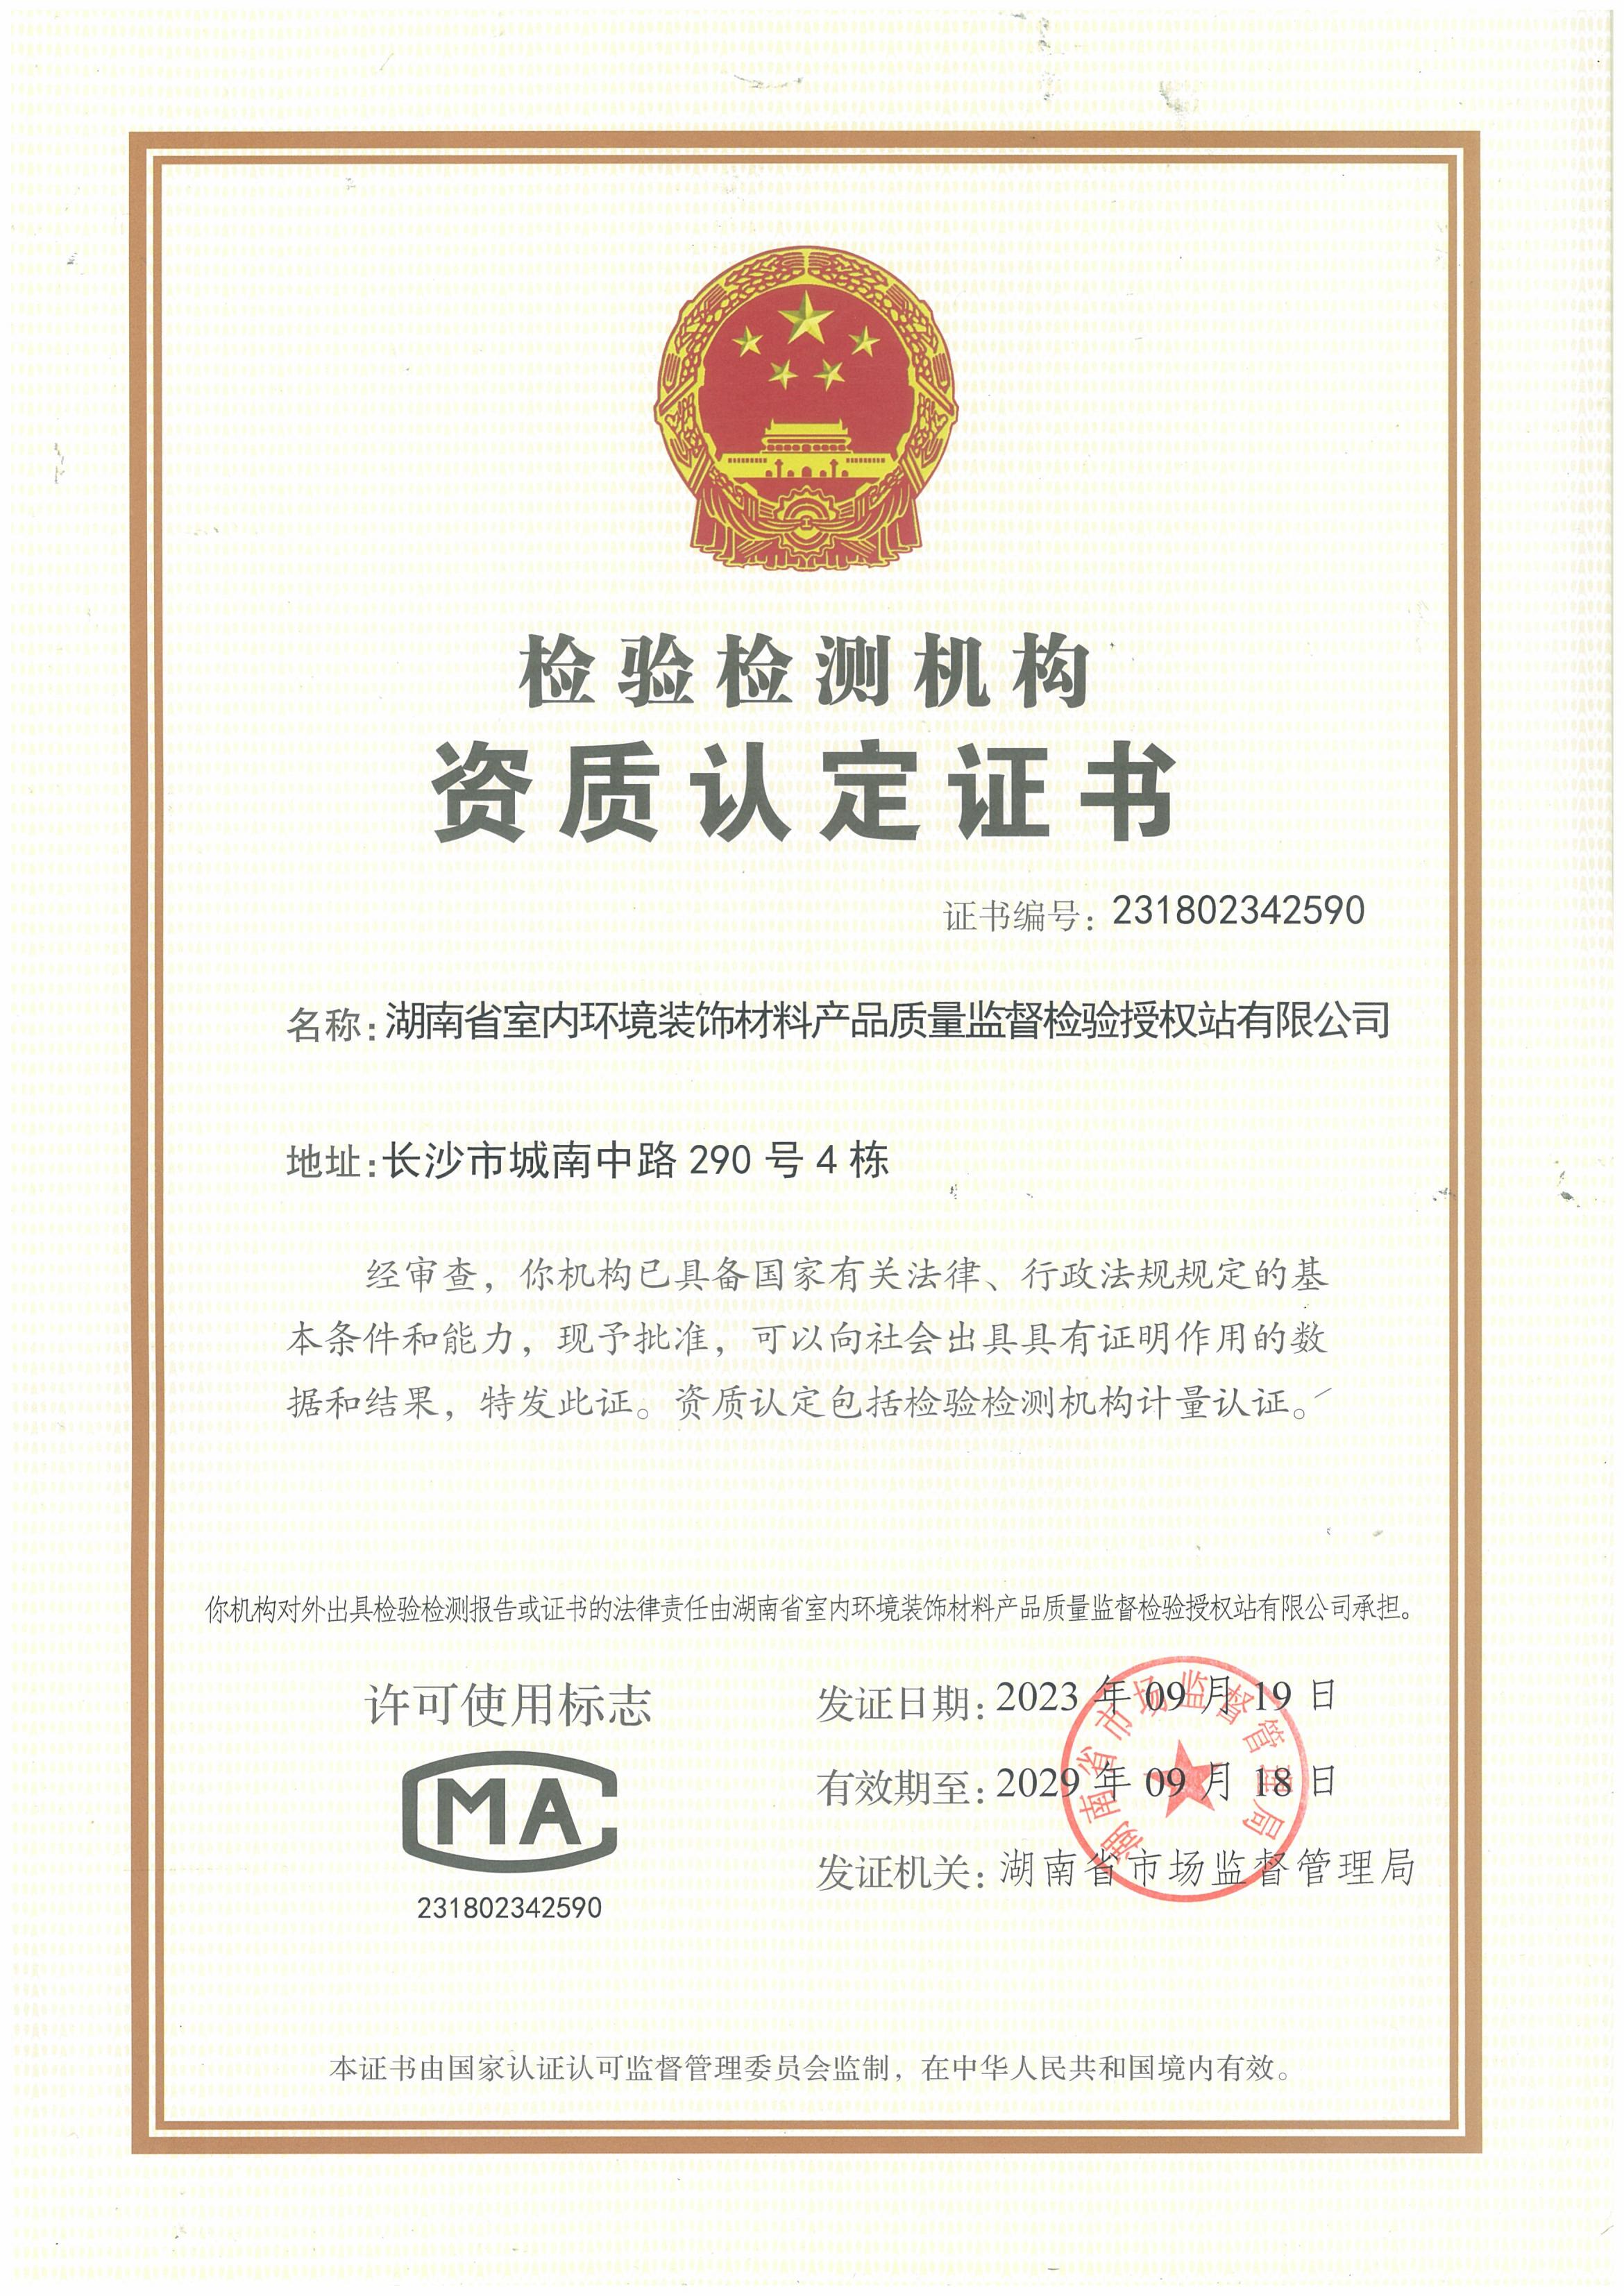 湖南省室内环境装饰材料产品质量监督检验授权站资质证书